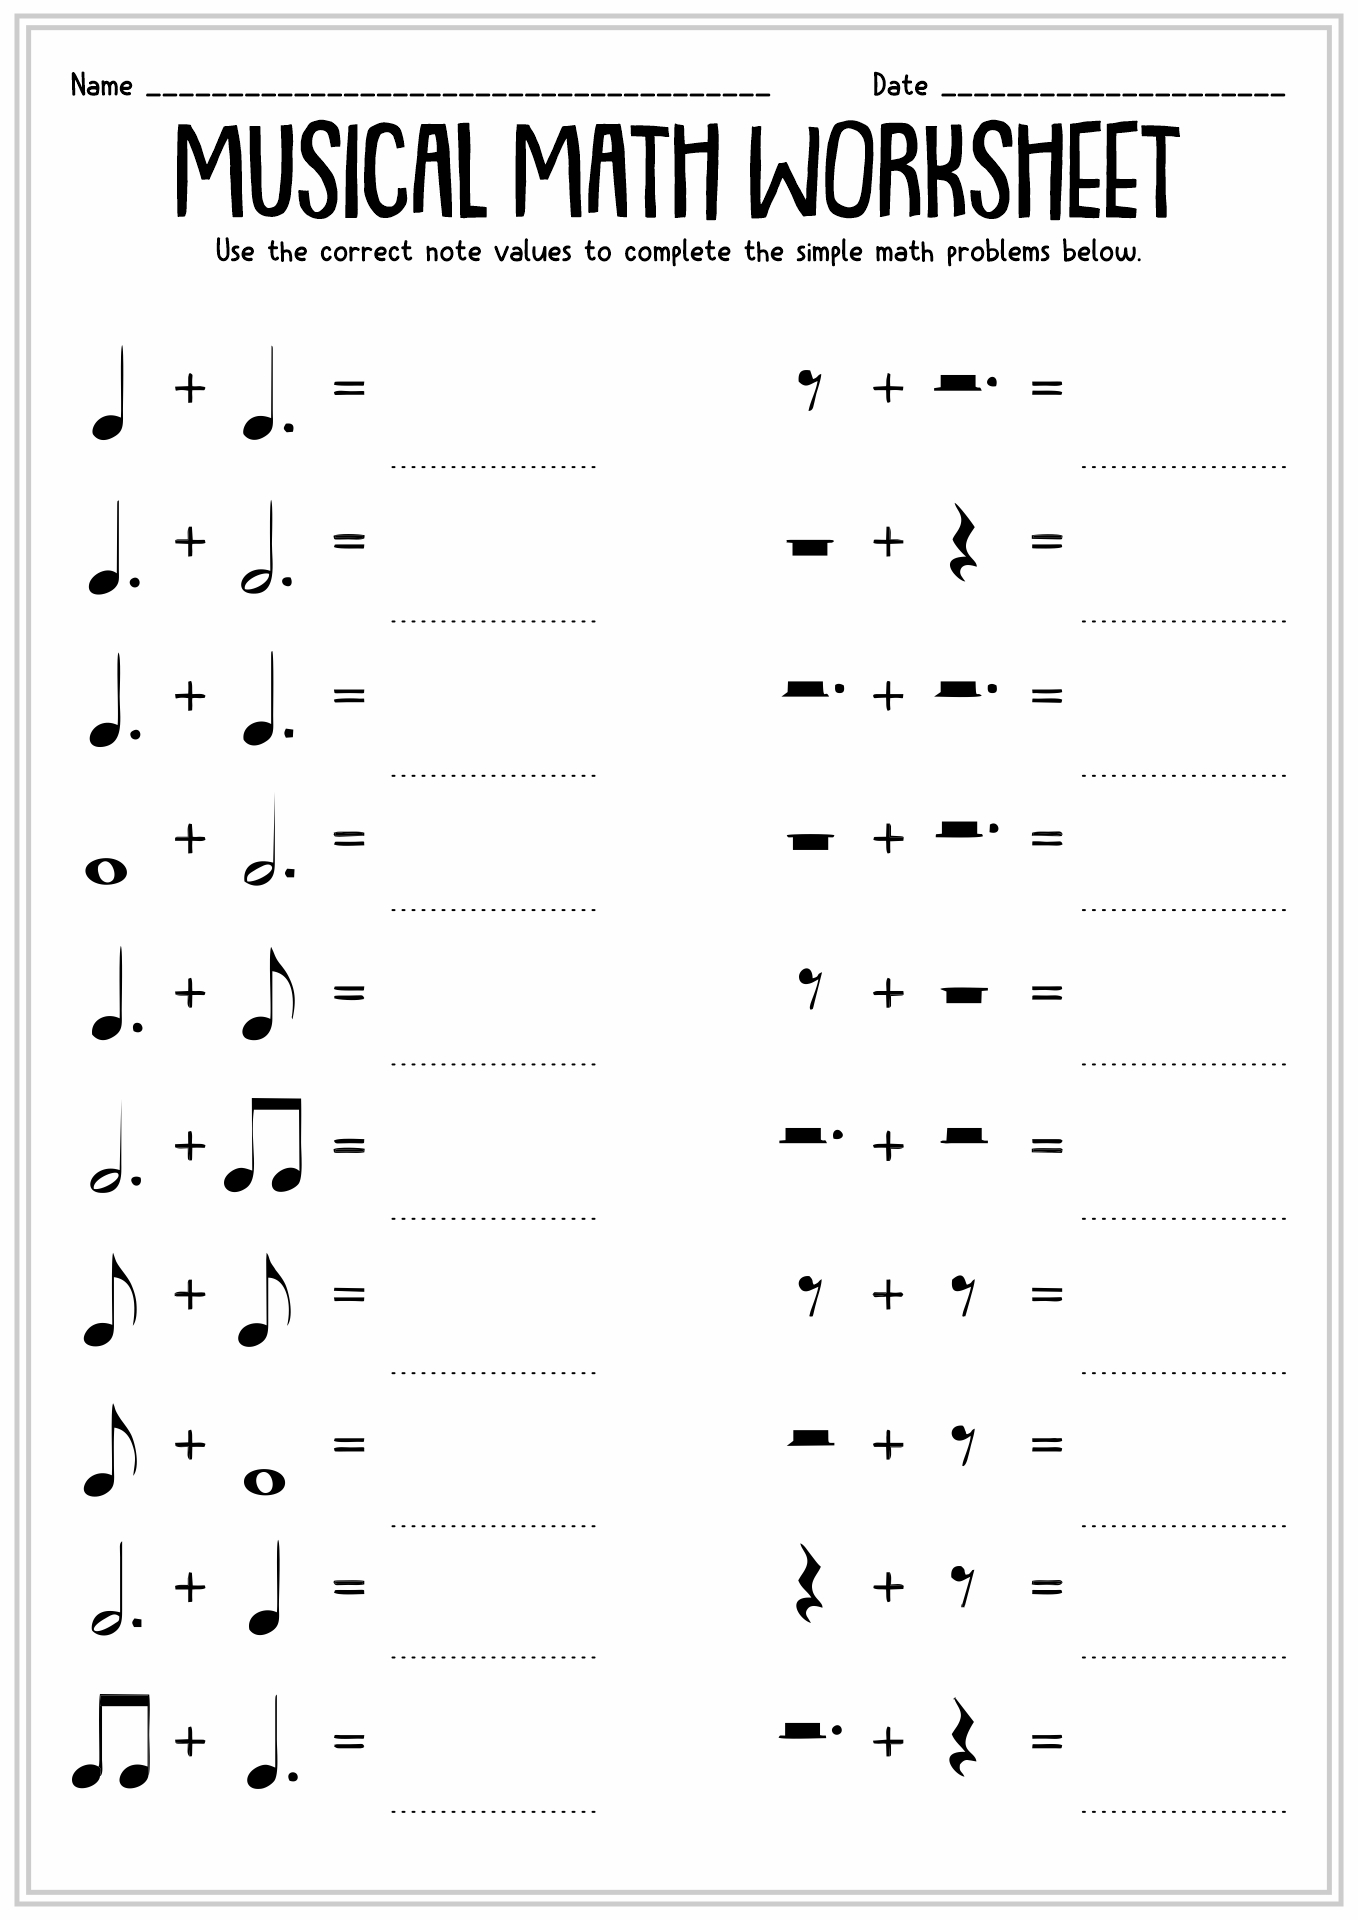 free-band-orchestra-worksheets-rhythm-notes-note-names-and-educacion